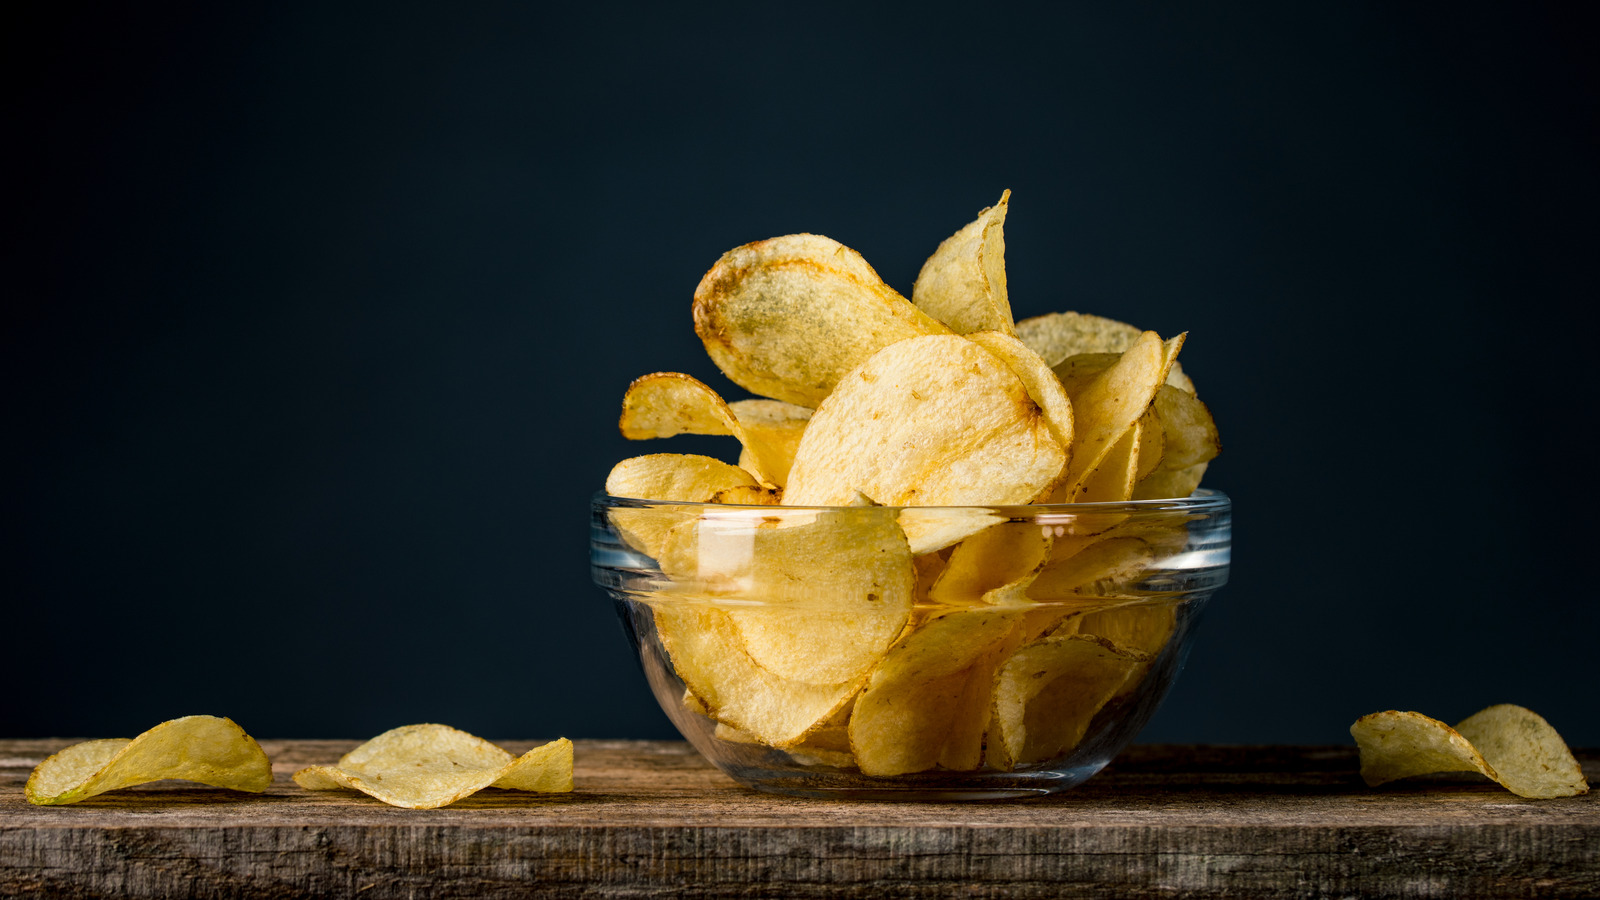 Easy Salt & Vinegar Seasoning Recipe For Chips & Wafers